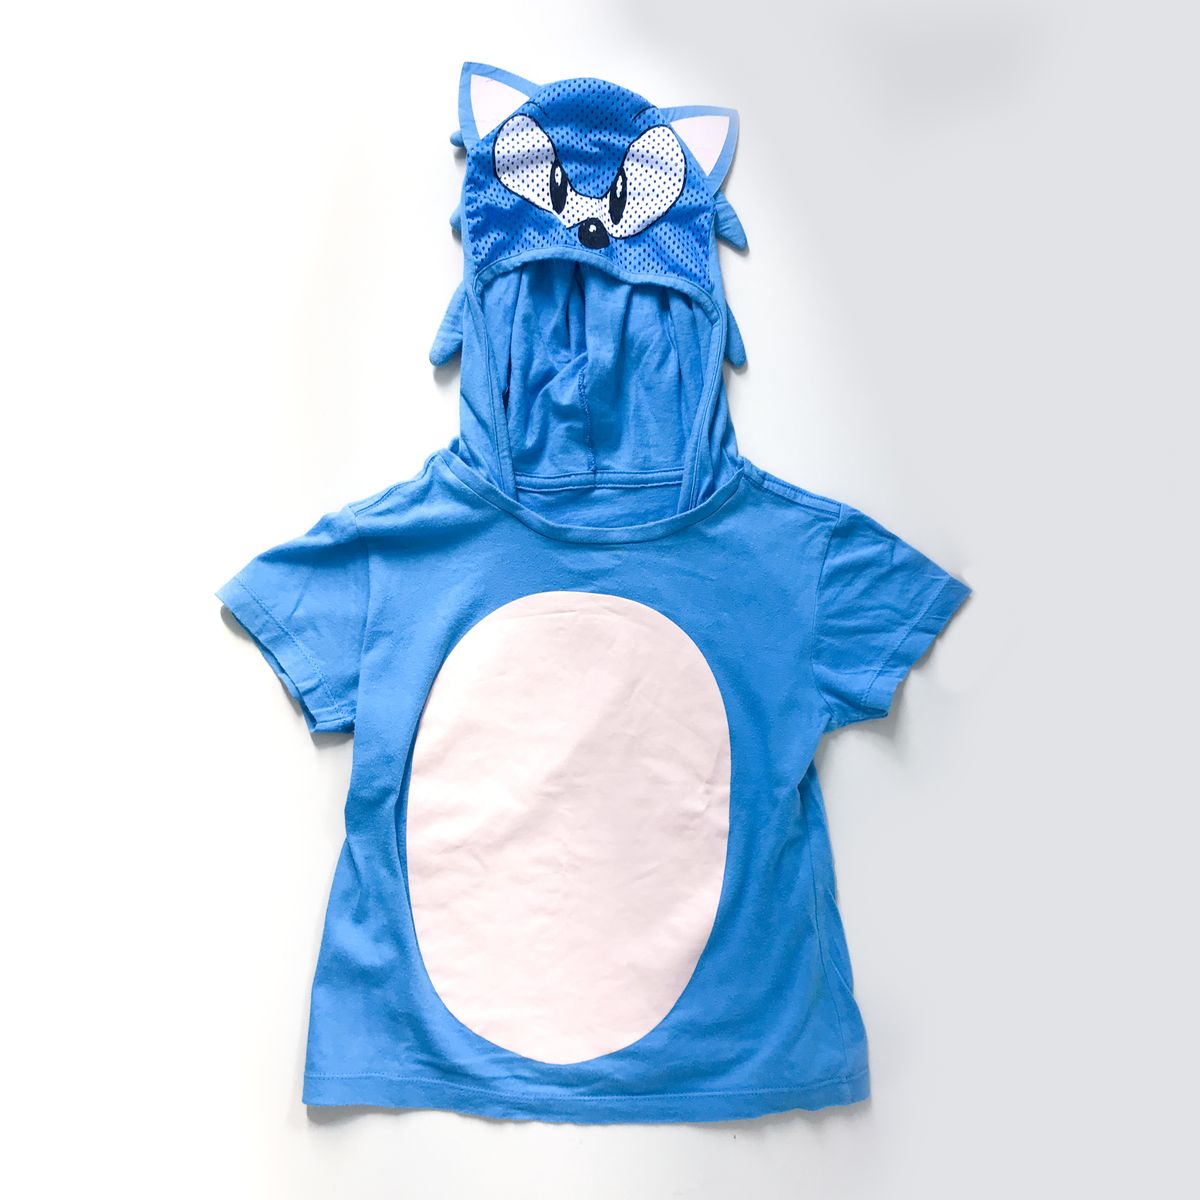 Fantasia Camiseta Sonic Infantil Com Capuz Personagens